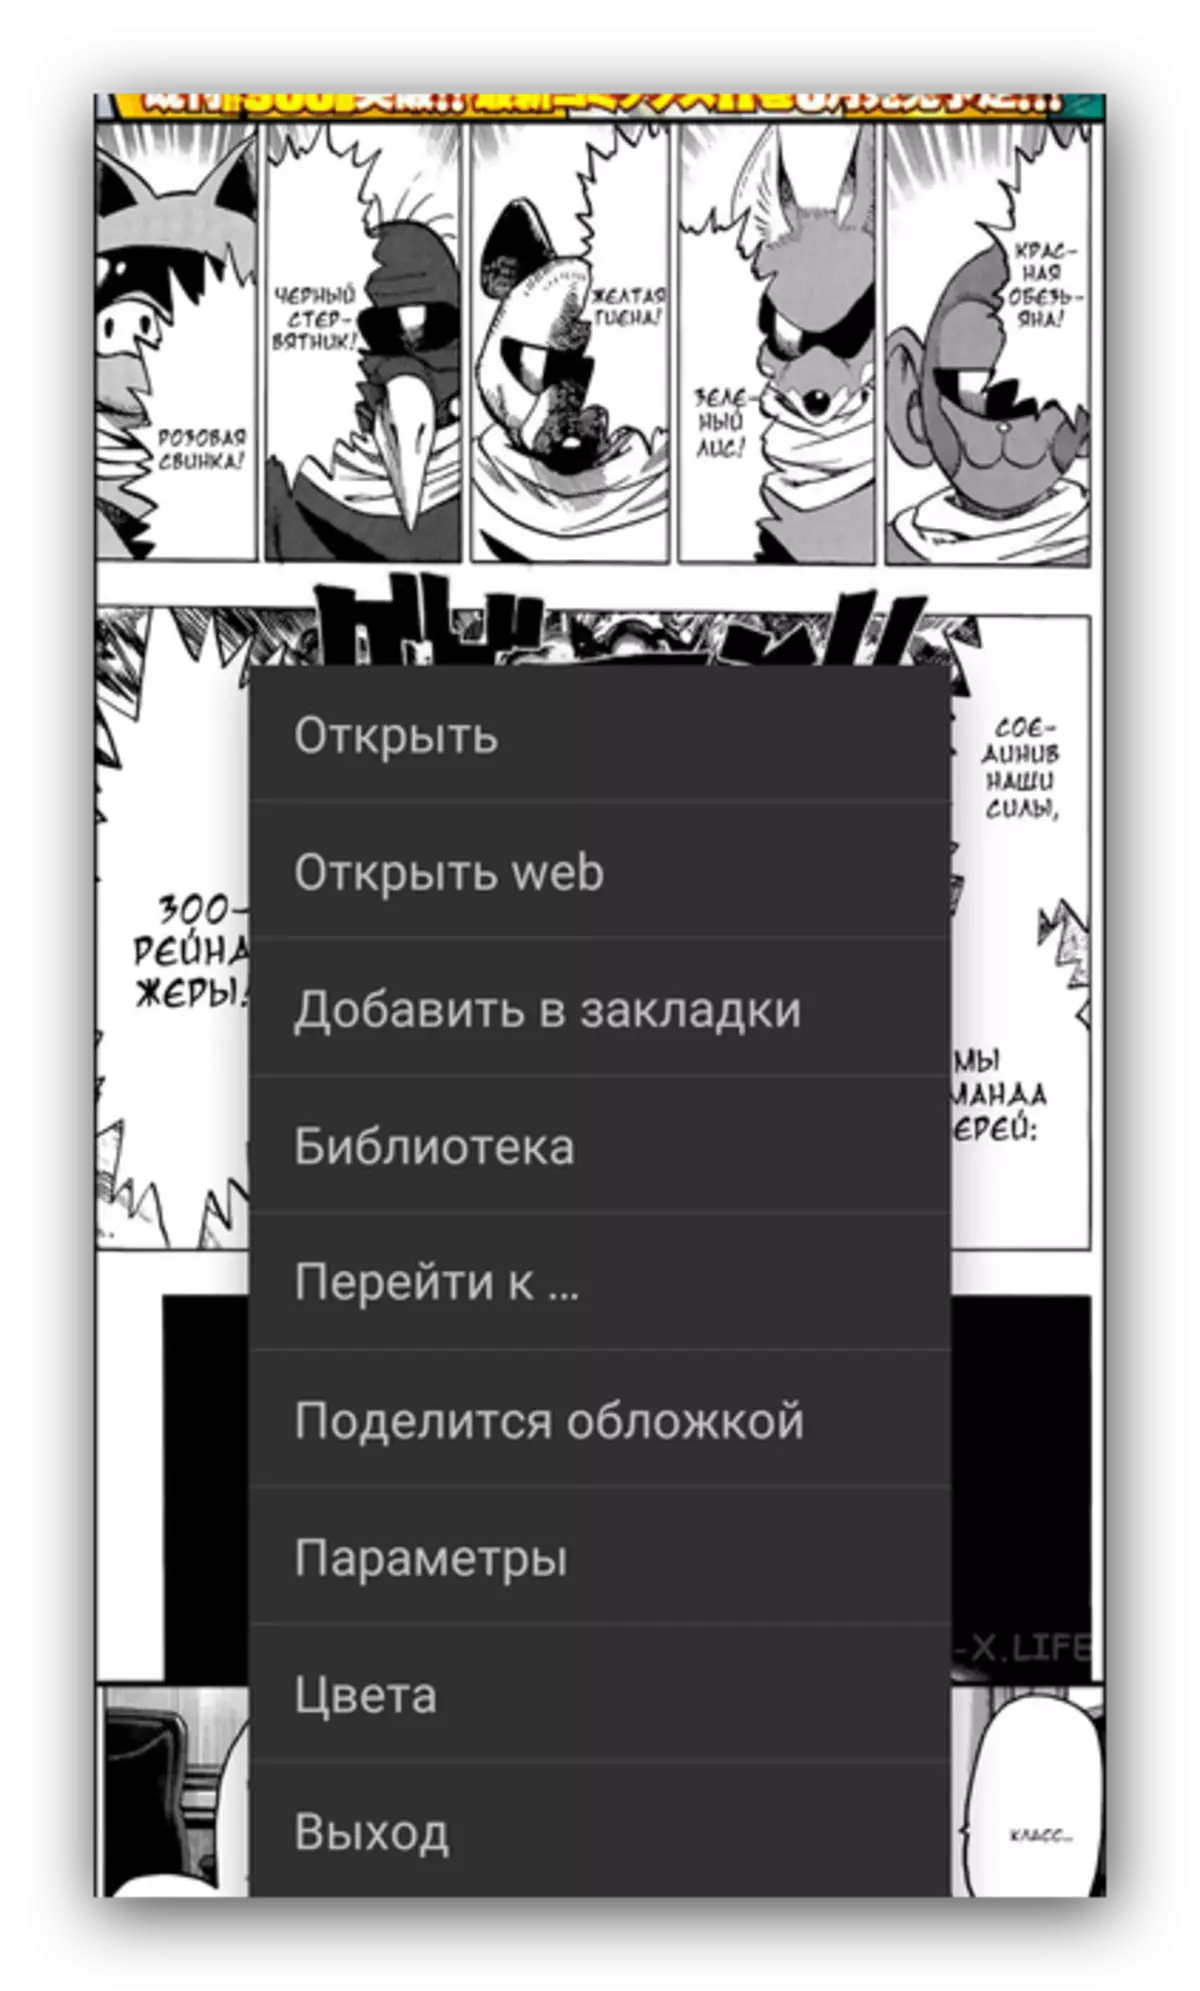 Magbasa manga alang sa viewer sa Challenger sa Android